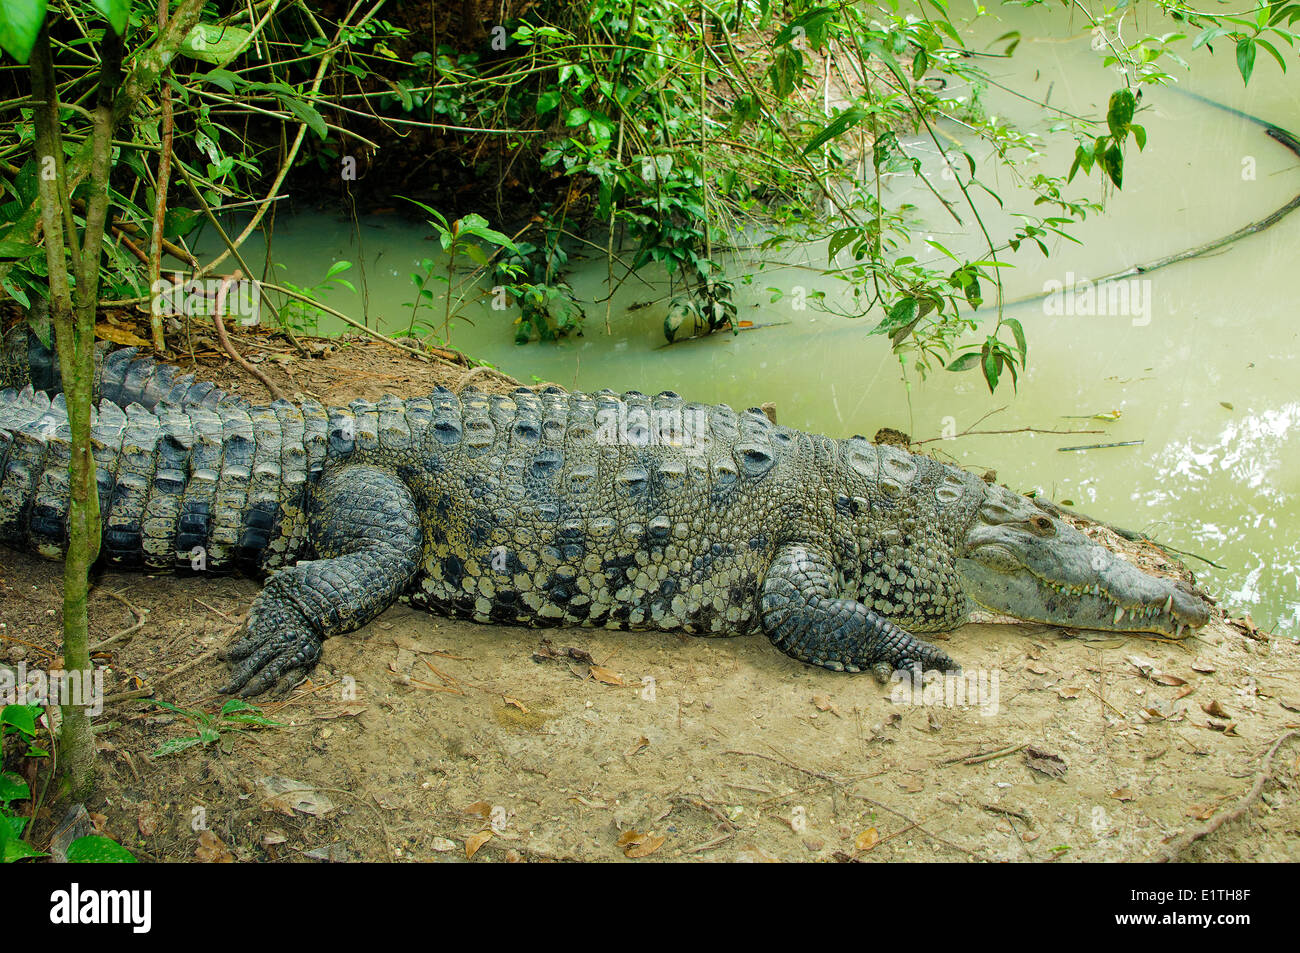 El Cocodrilo Americano (Crocodylus acutus) regodearse, Belice, Centroamérica Foto de stock